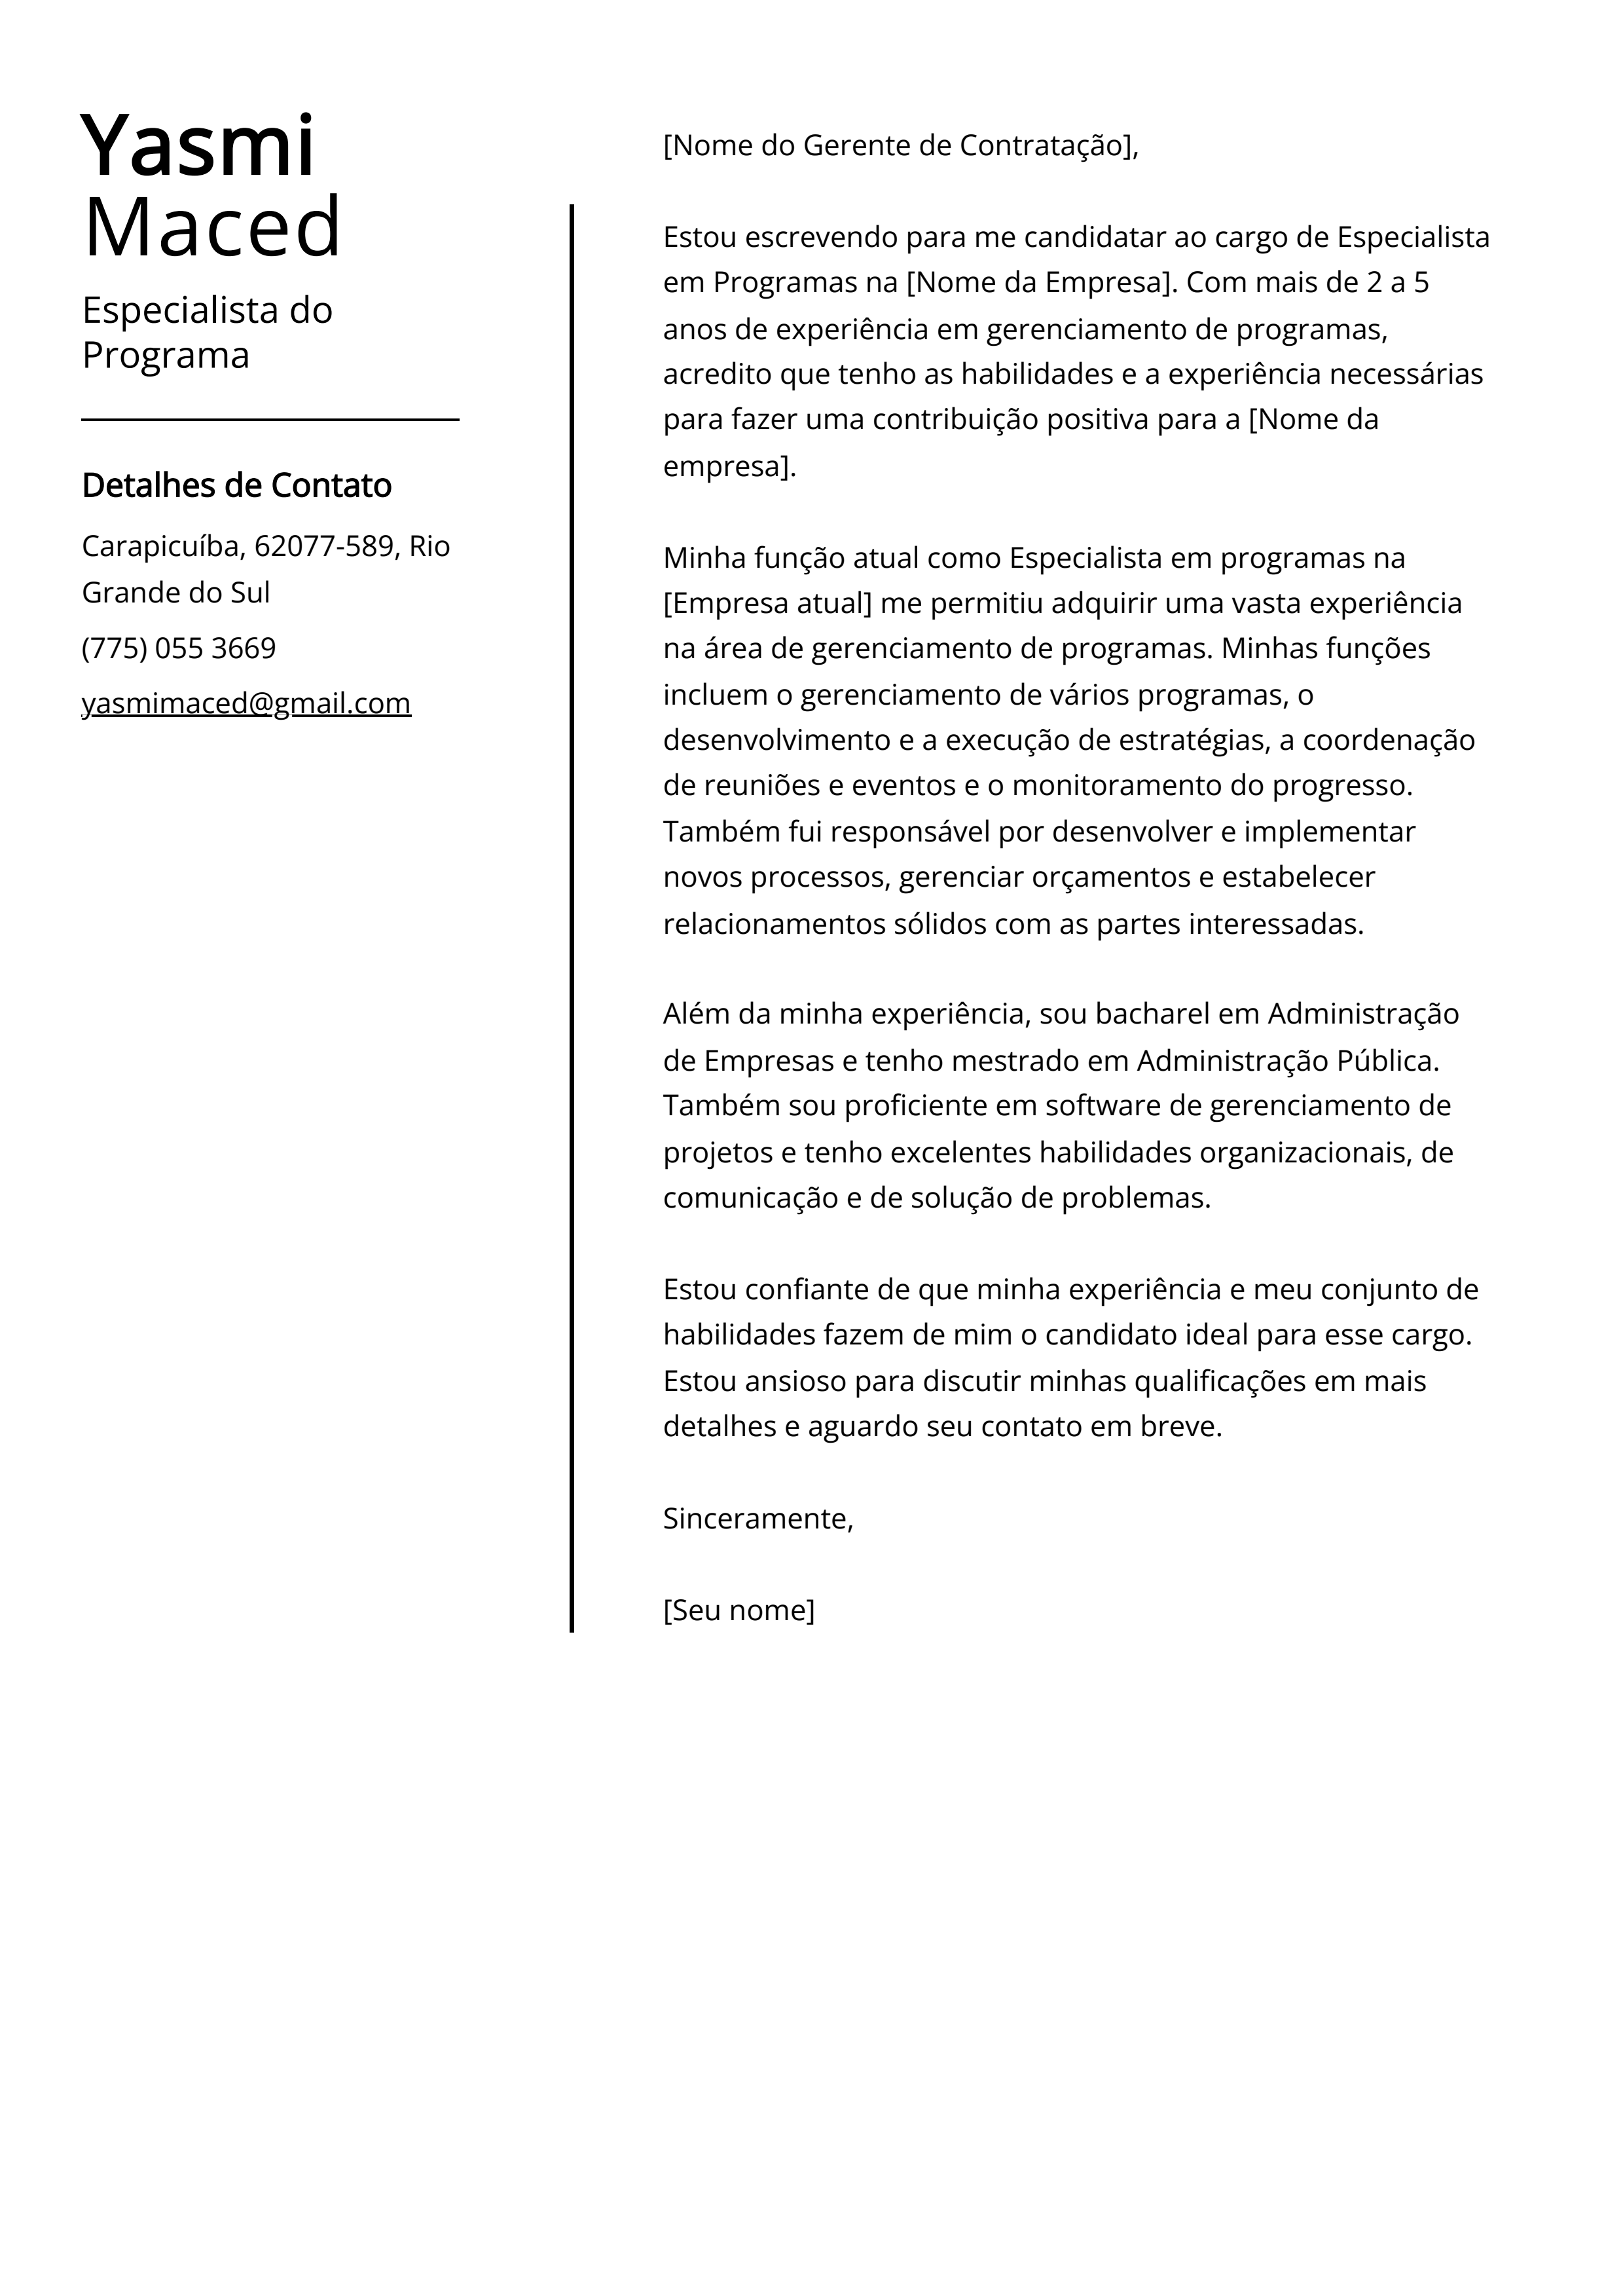 Exemplo de carta de apresentação do Especialista do Programa